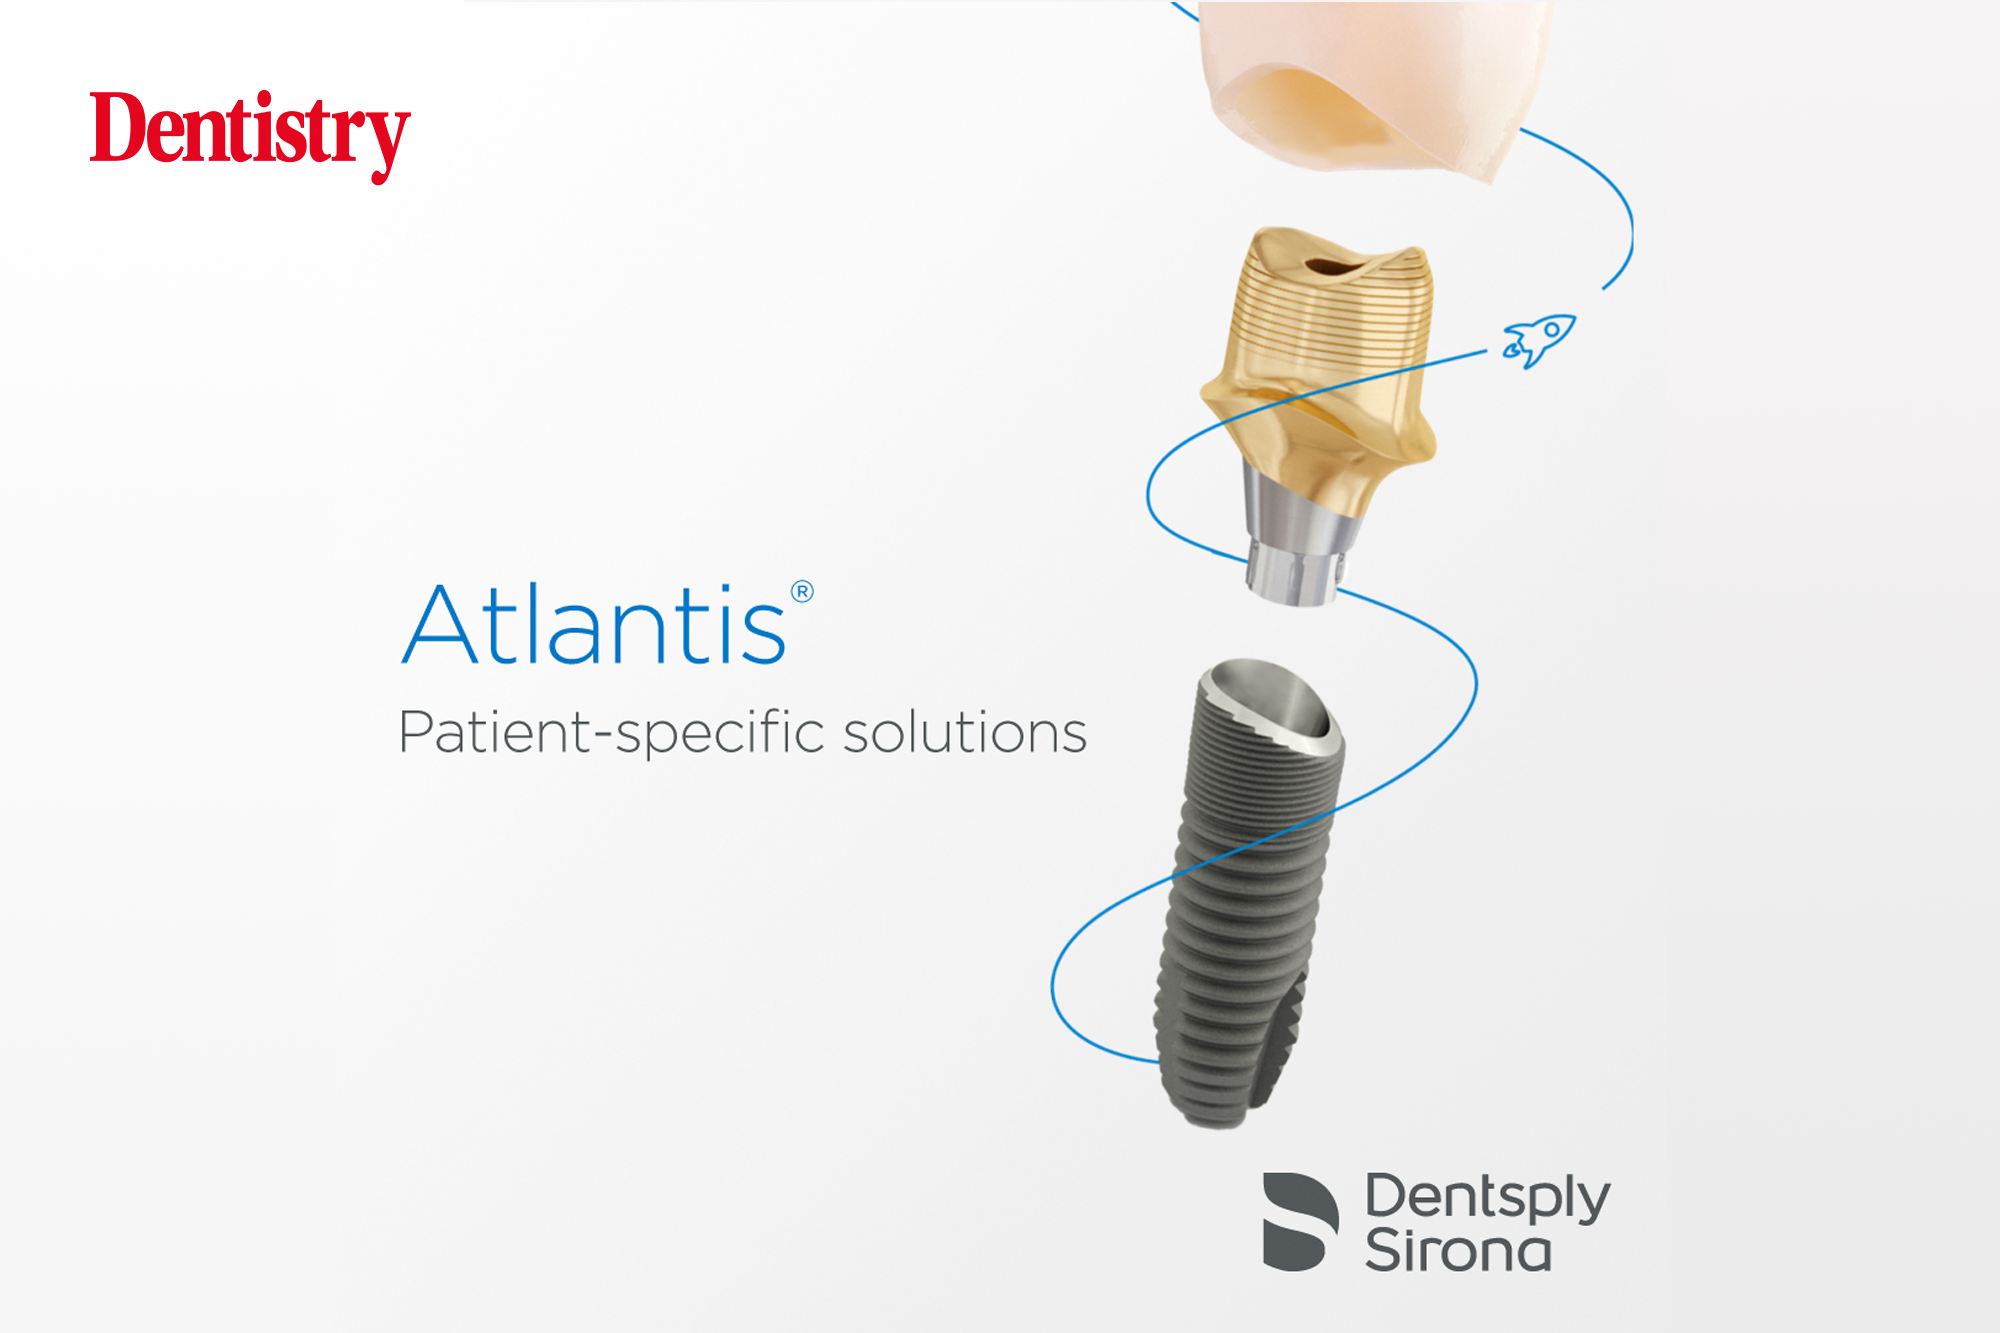 atlantis for dental implant prostheses